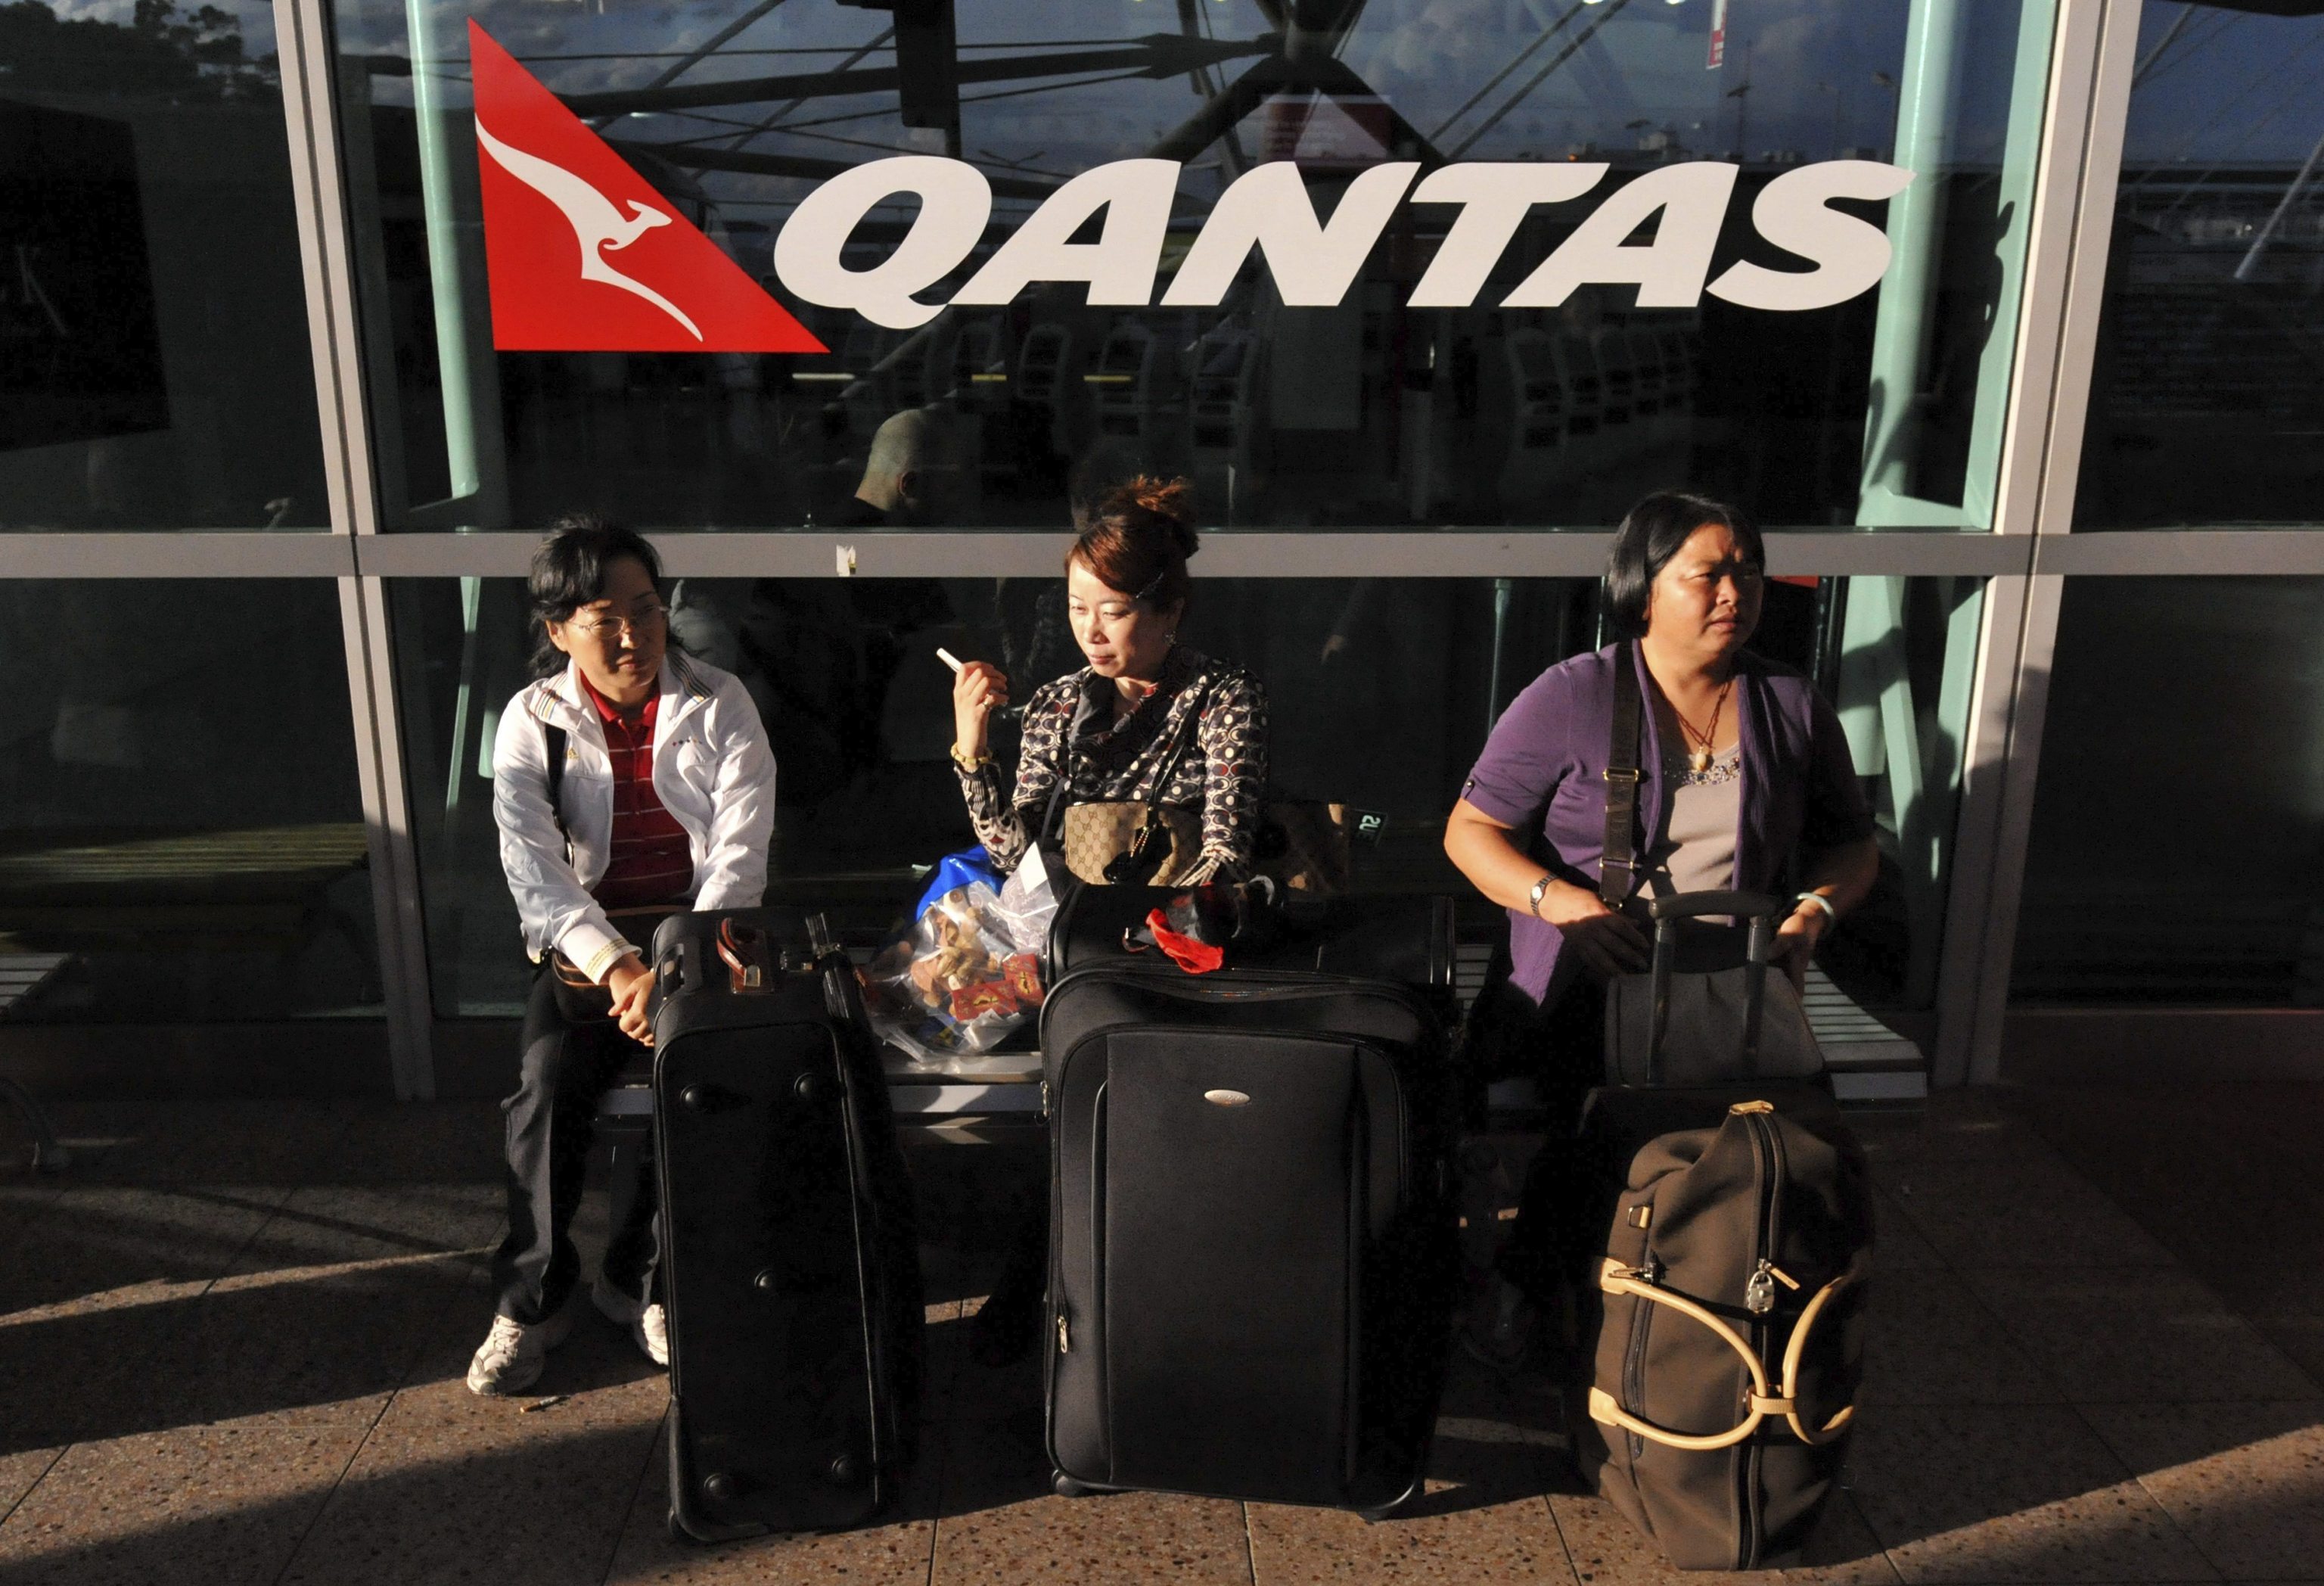 Pasajeros esperan con su equipaje con el logo de Qantas a sus espaldas